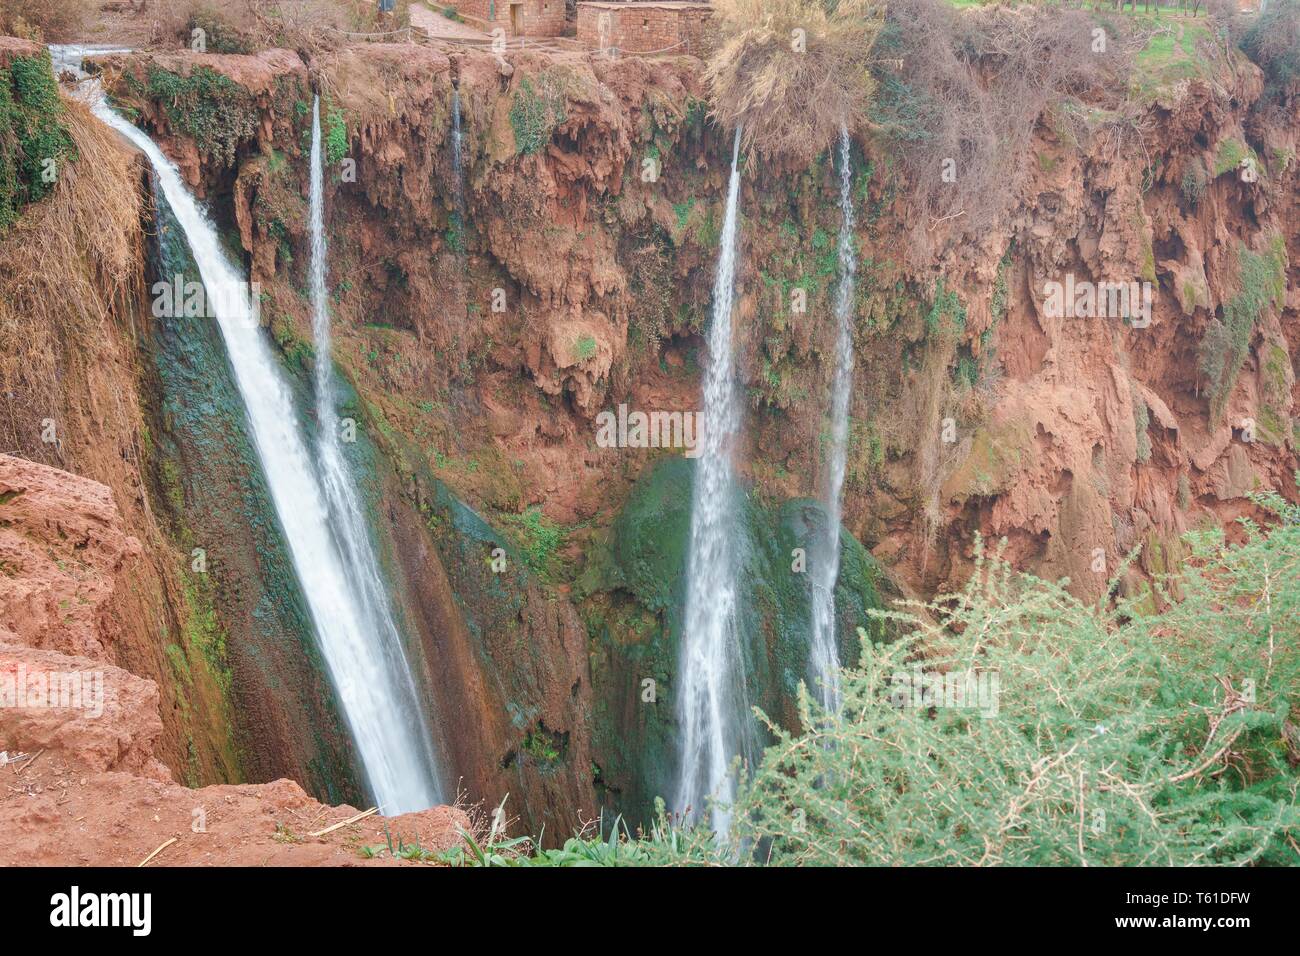 Berühmter Ouzoud Kaskade Wasserfall bei Marrakesch Jura-Kalk Landschaft, Marokko Famous ouzoud casacade waterfall marrakech cascades, morocco Stock Photo